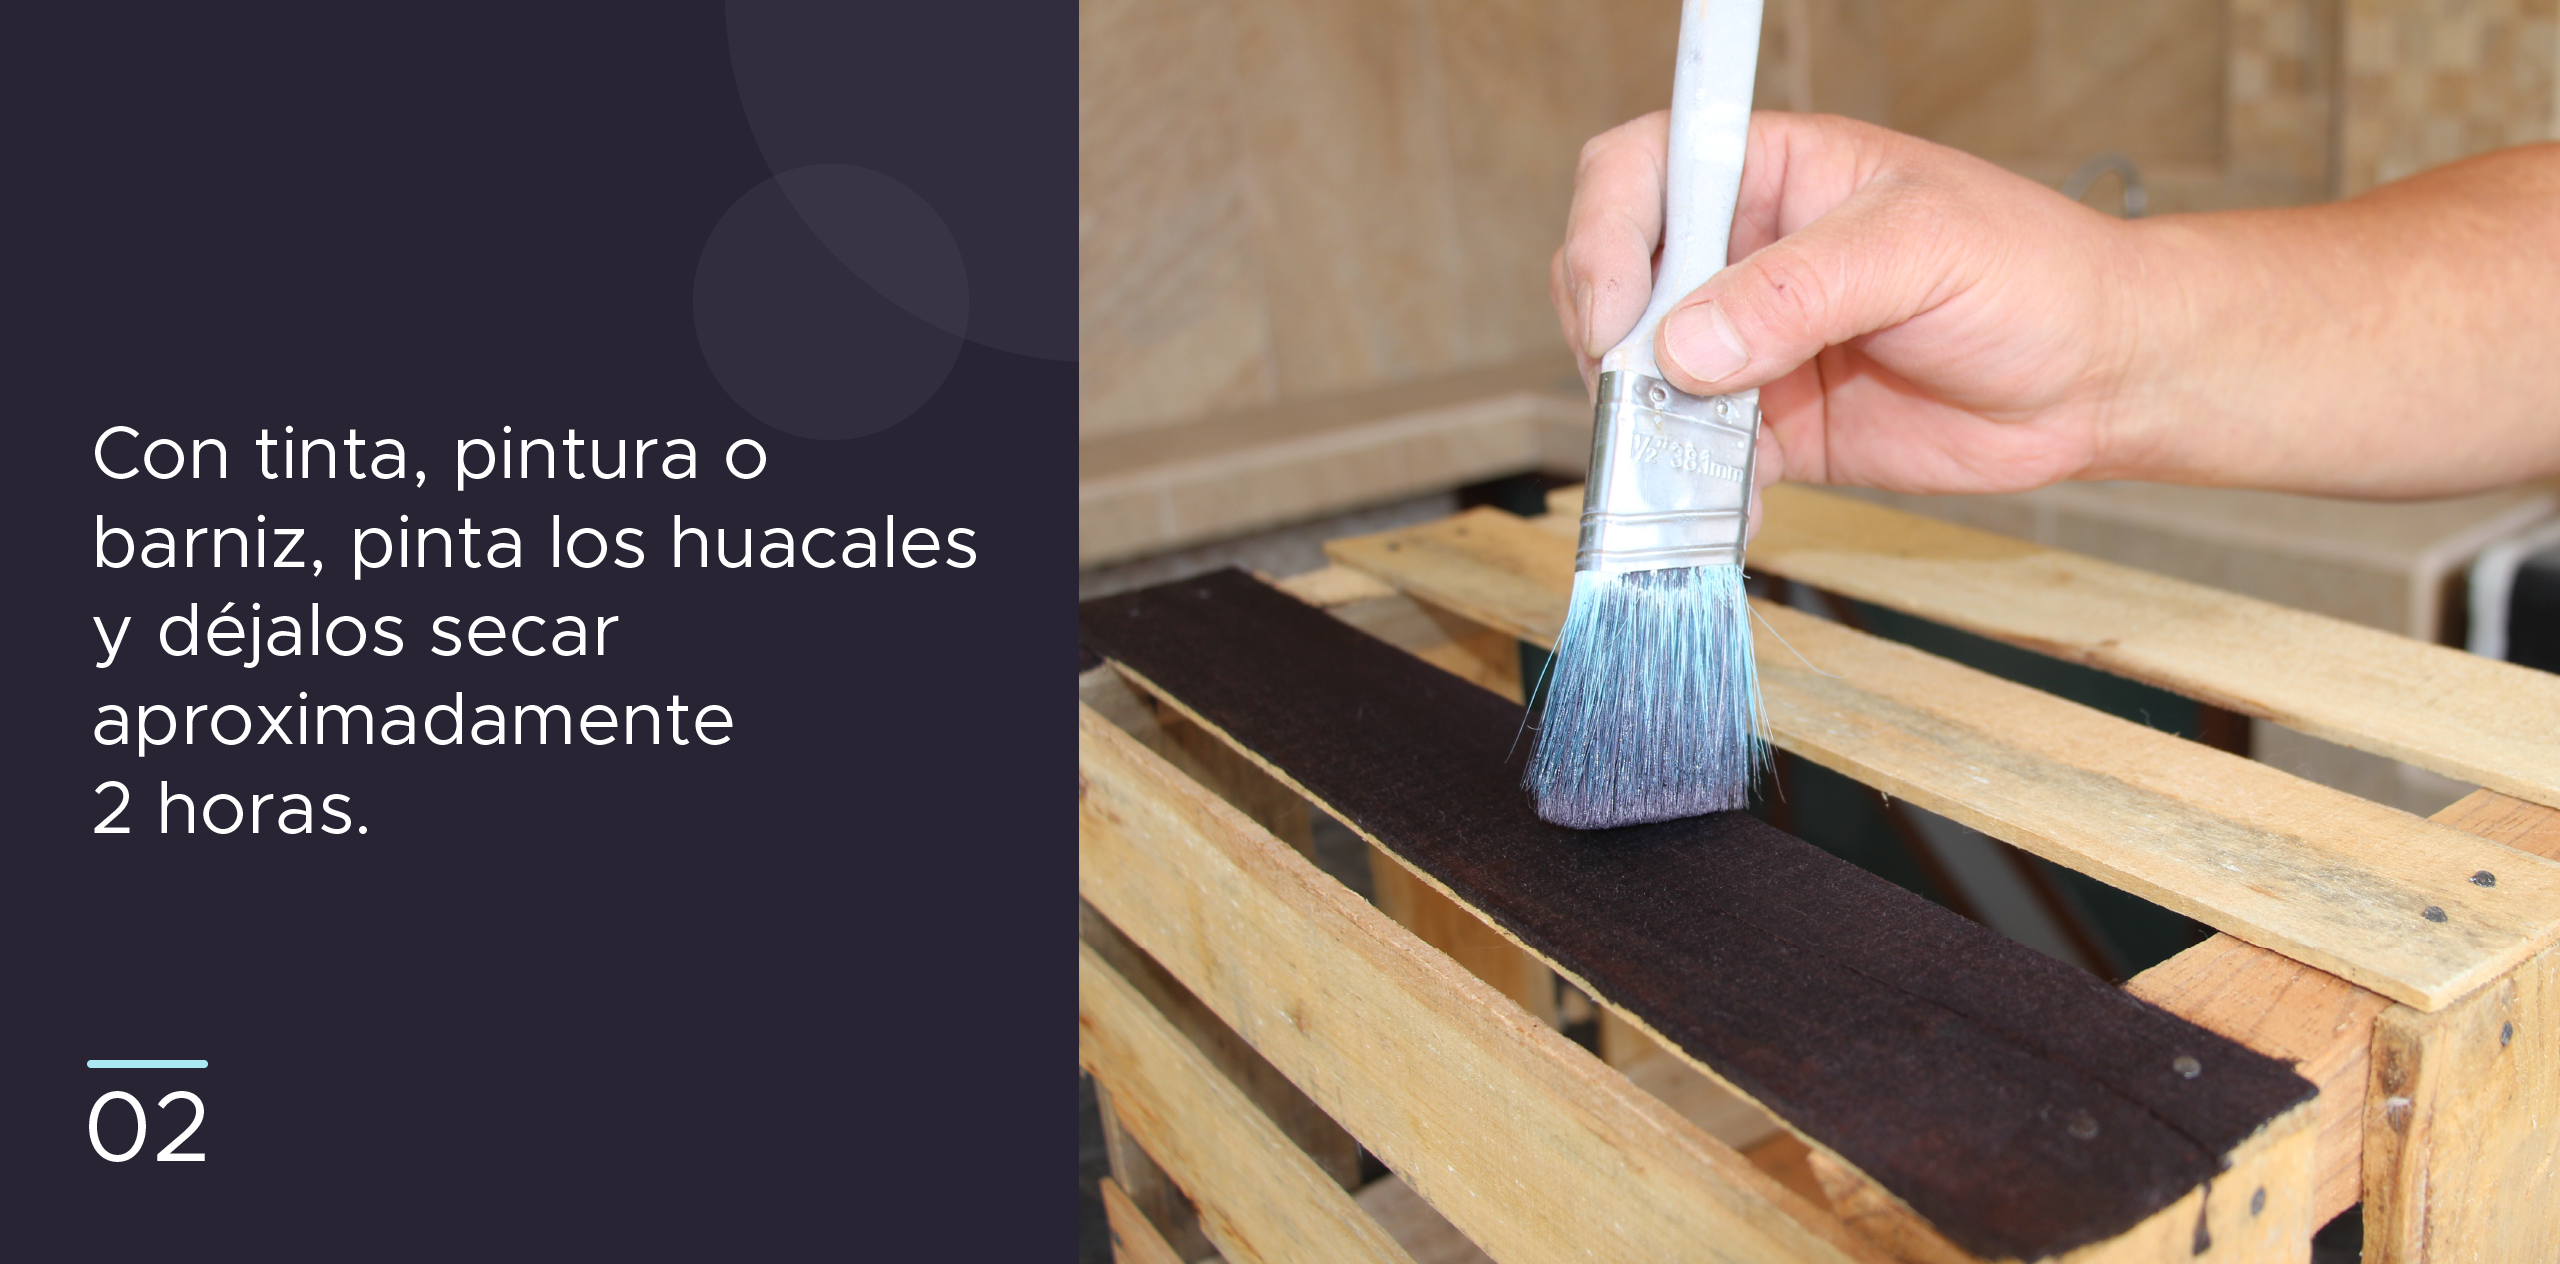 2. Con tinta, pintura o barniz, pinta los huacales y déjalos secar aproximadamente 2 horas